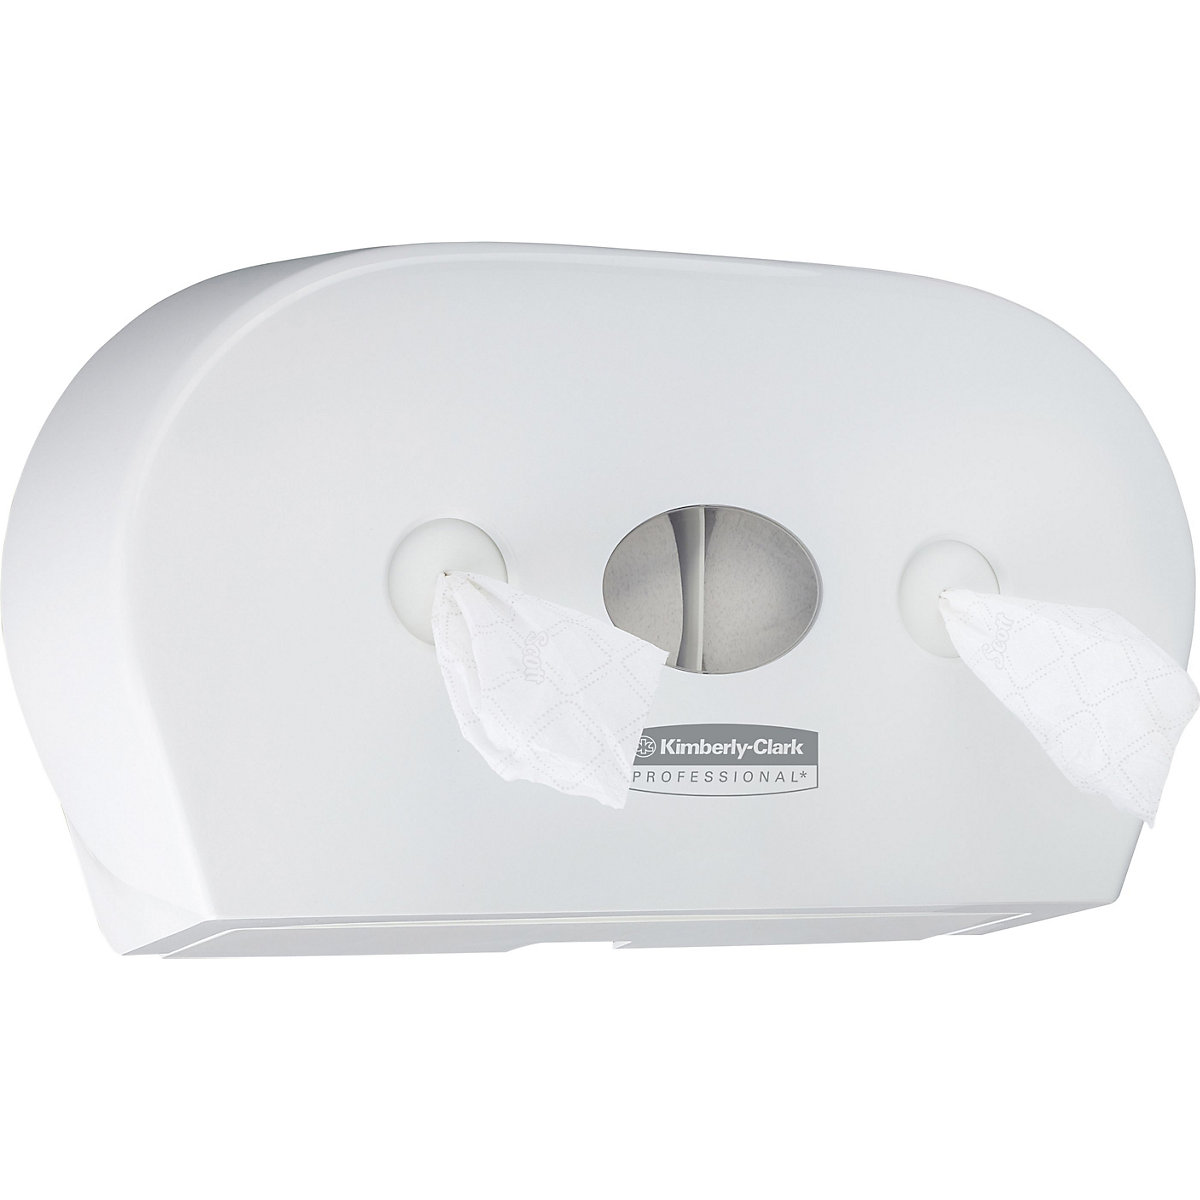 Mini podajalnik toaletnega papirja 7186 Scott® Control™ – Kimberly-Clark